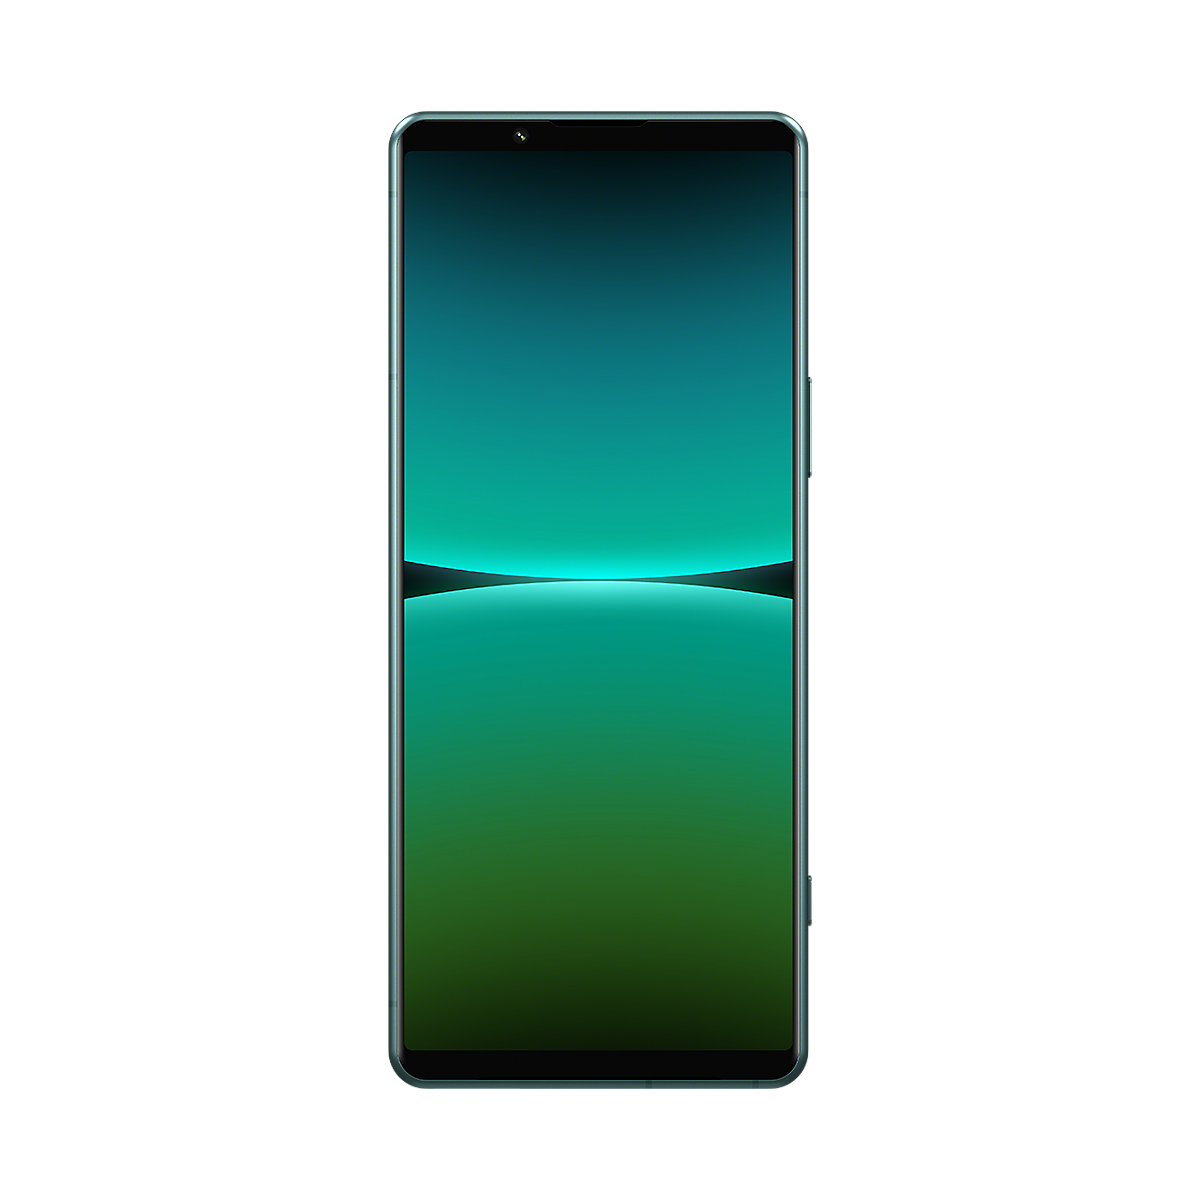 Záber spredu a zozadu na smartfón Xperia 5 IV v zelenej farbe